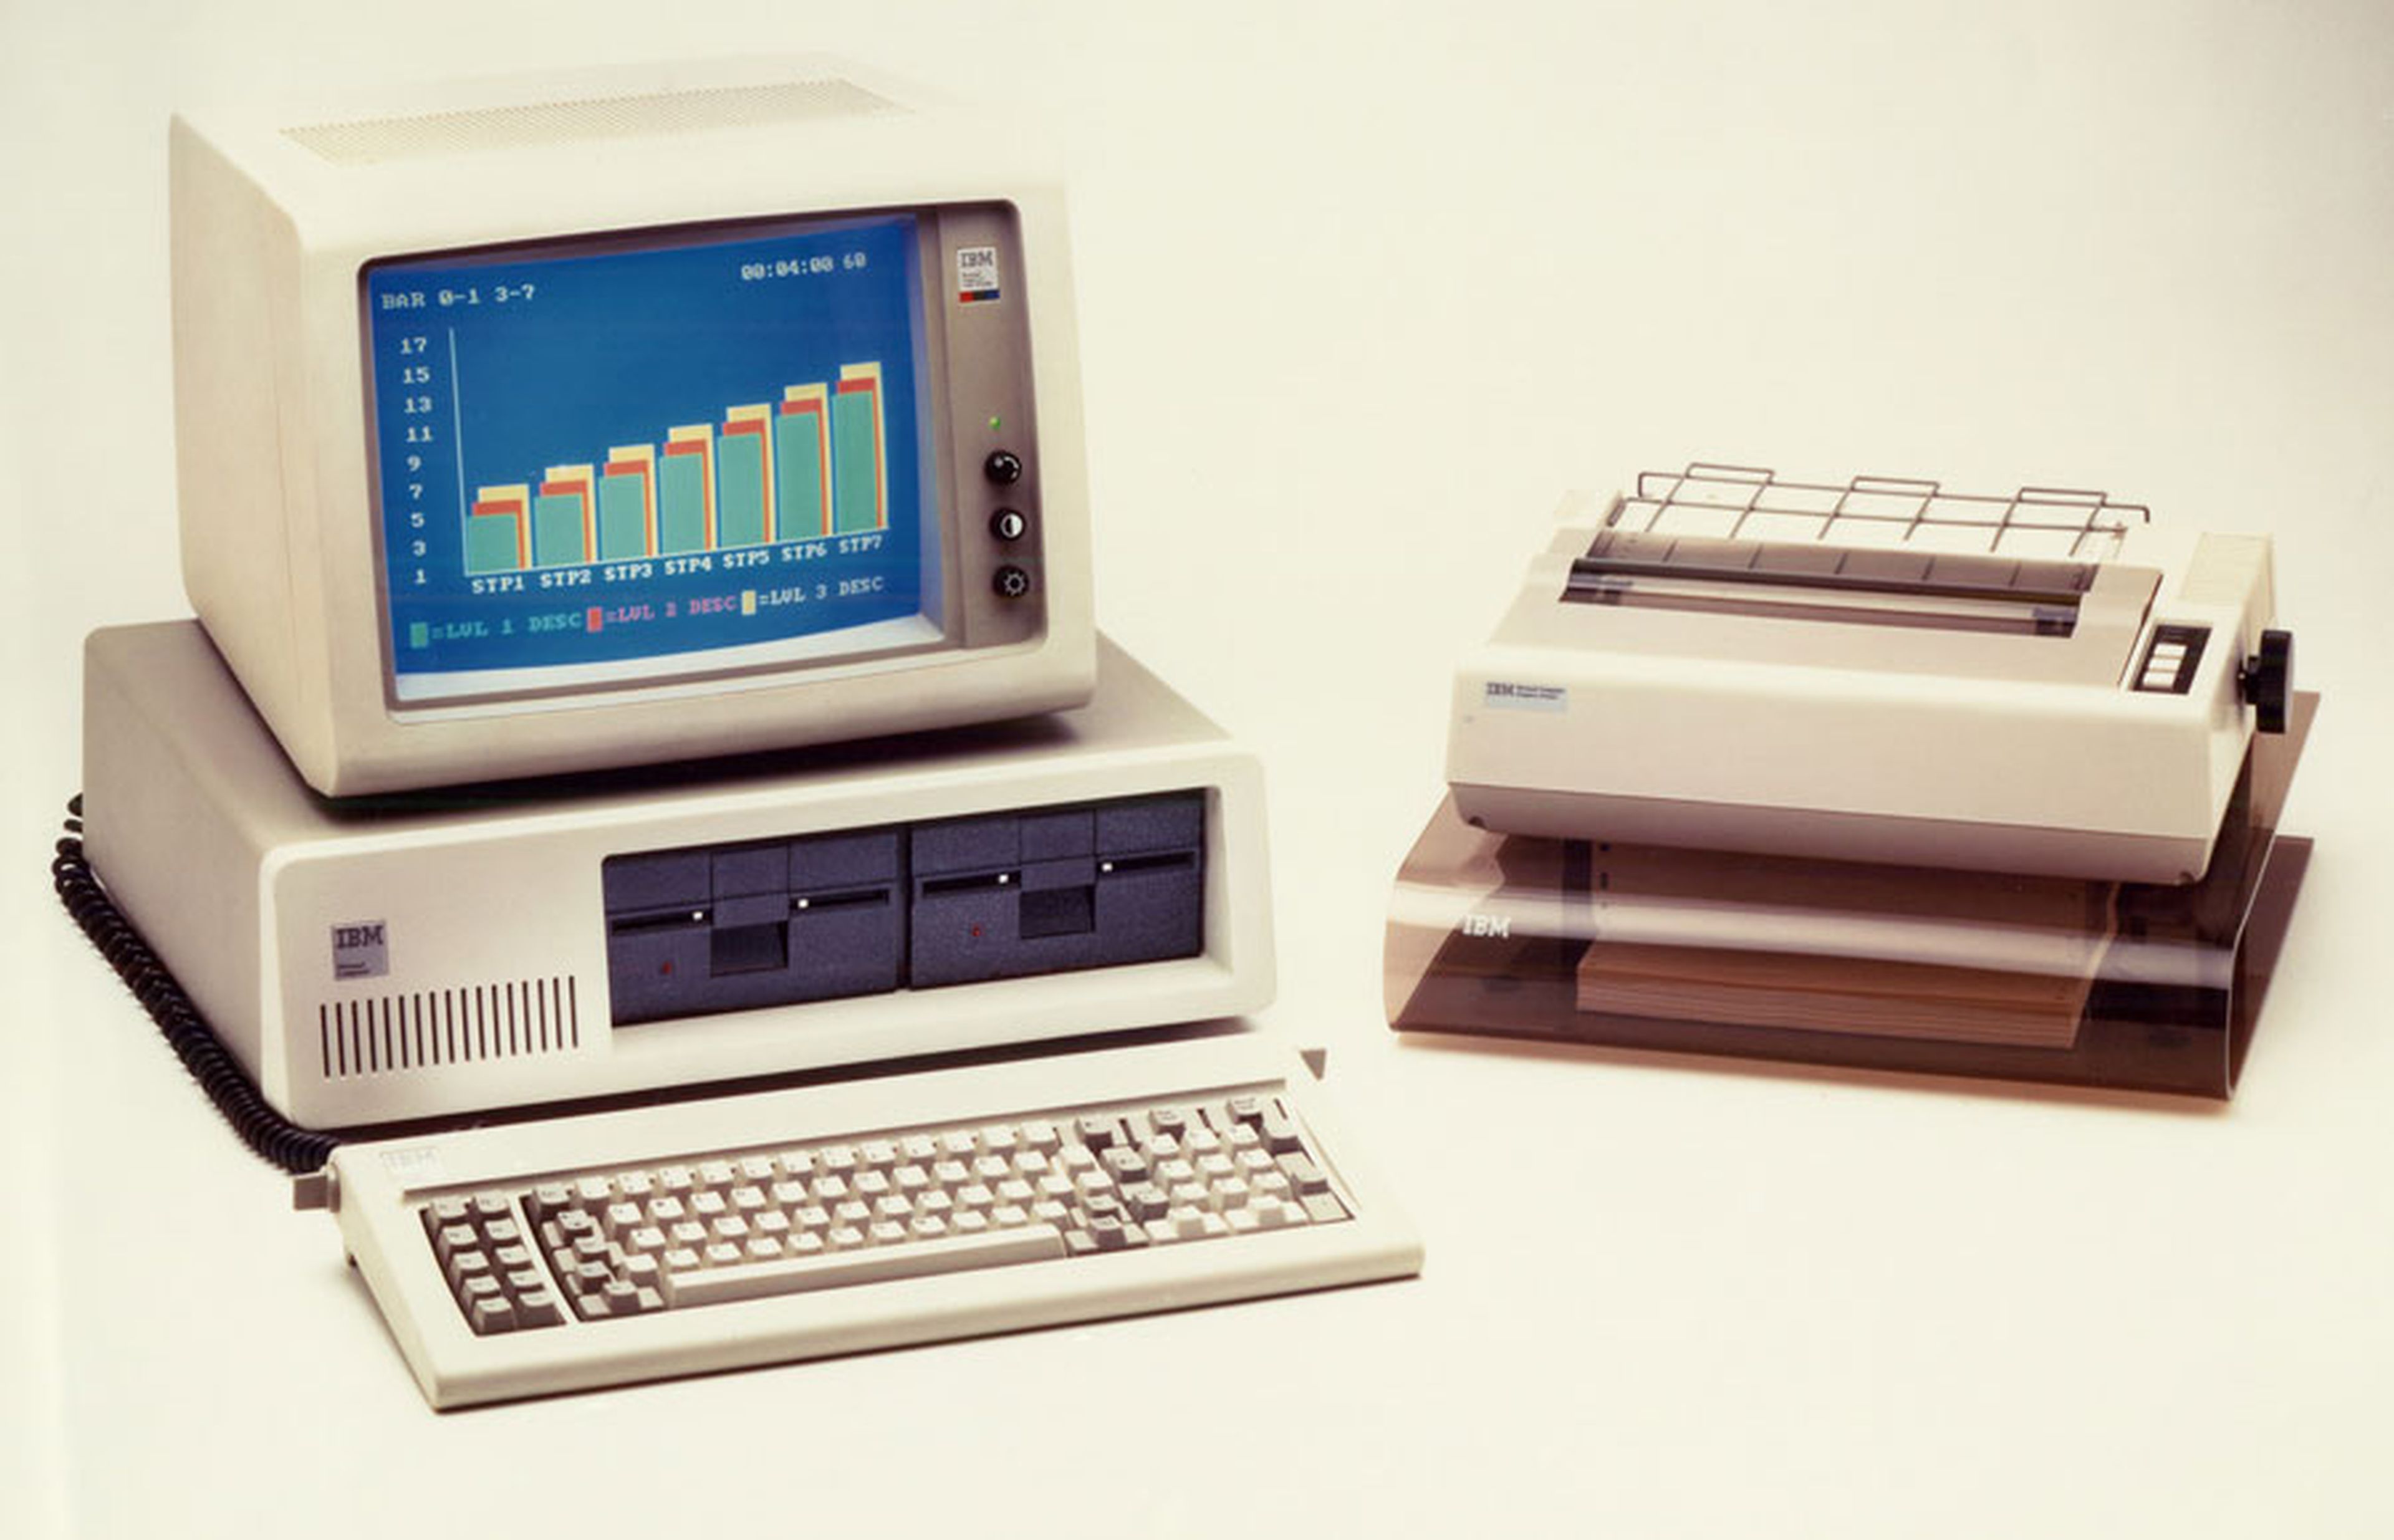 IBM PCs